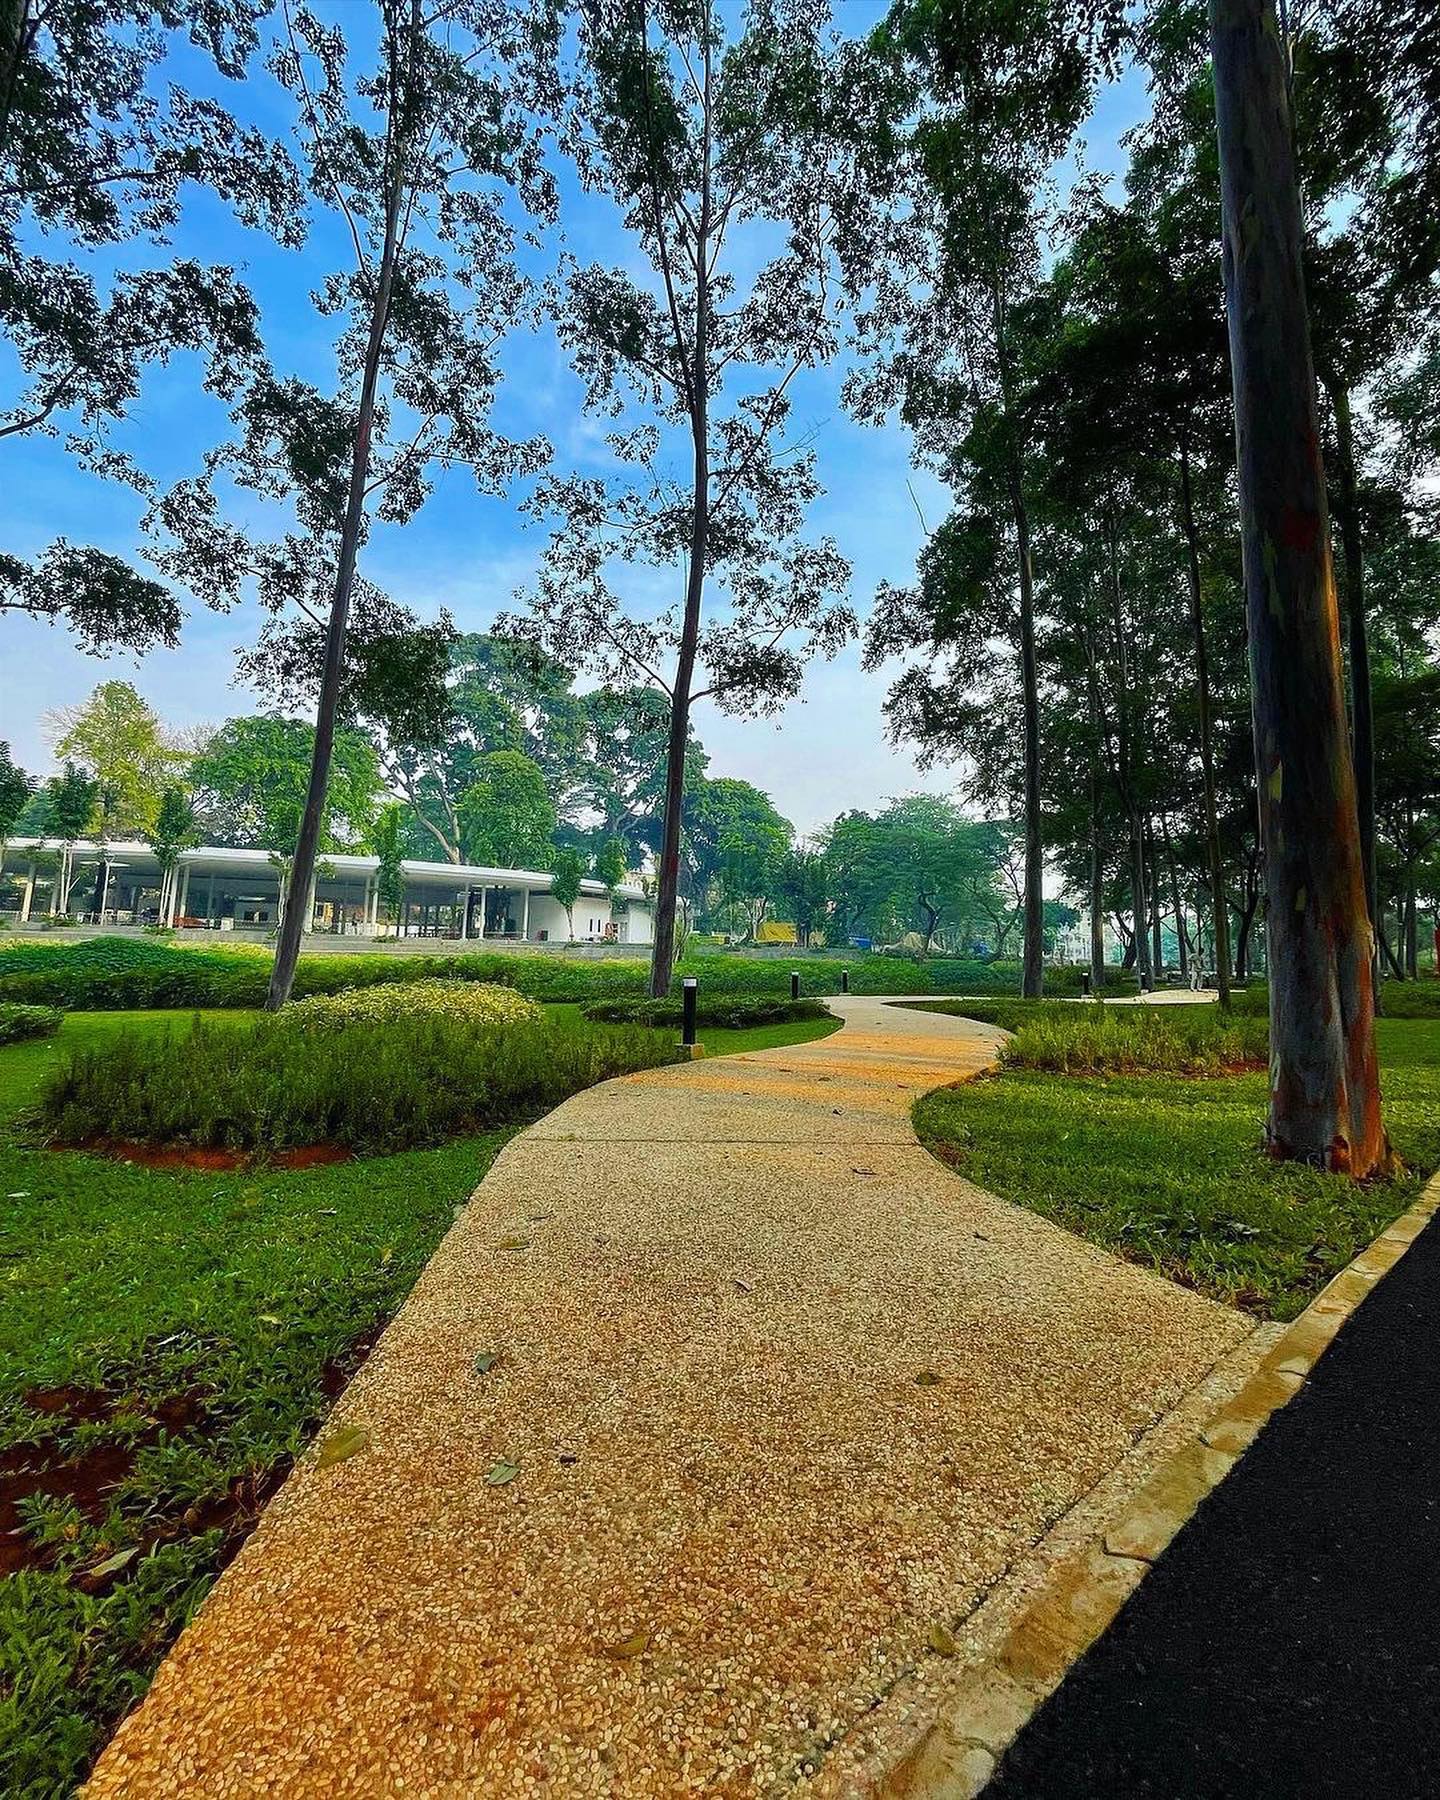 Harga Tiket Masuk Tebet Eco Park Jakarta Image From @ngabilajepret1